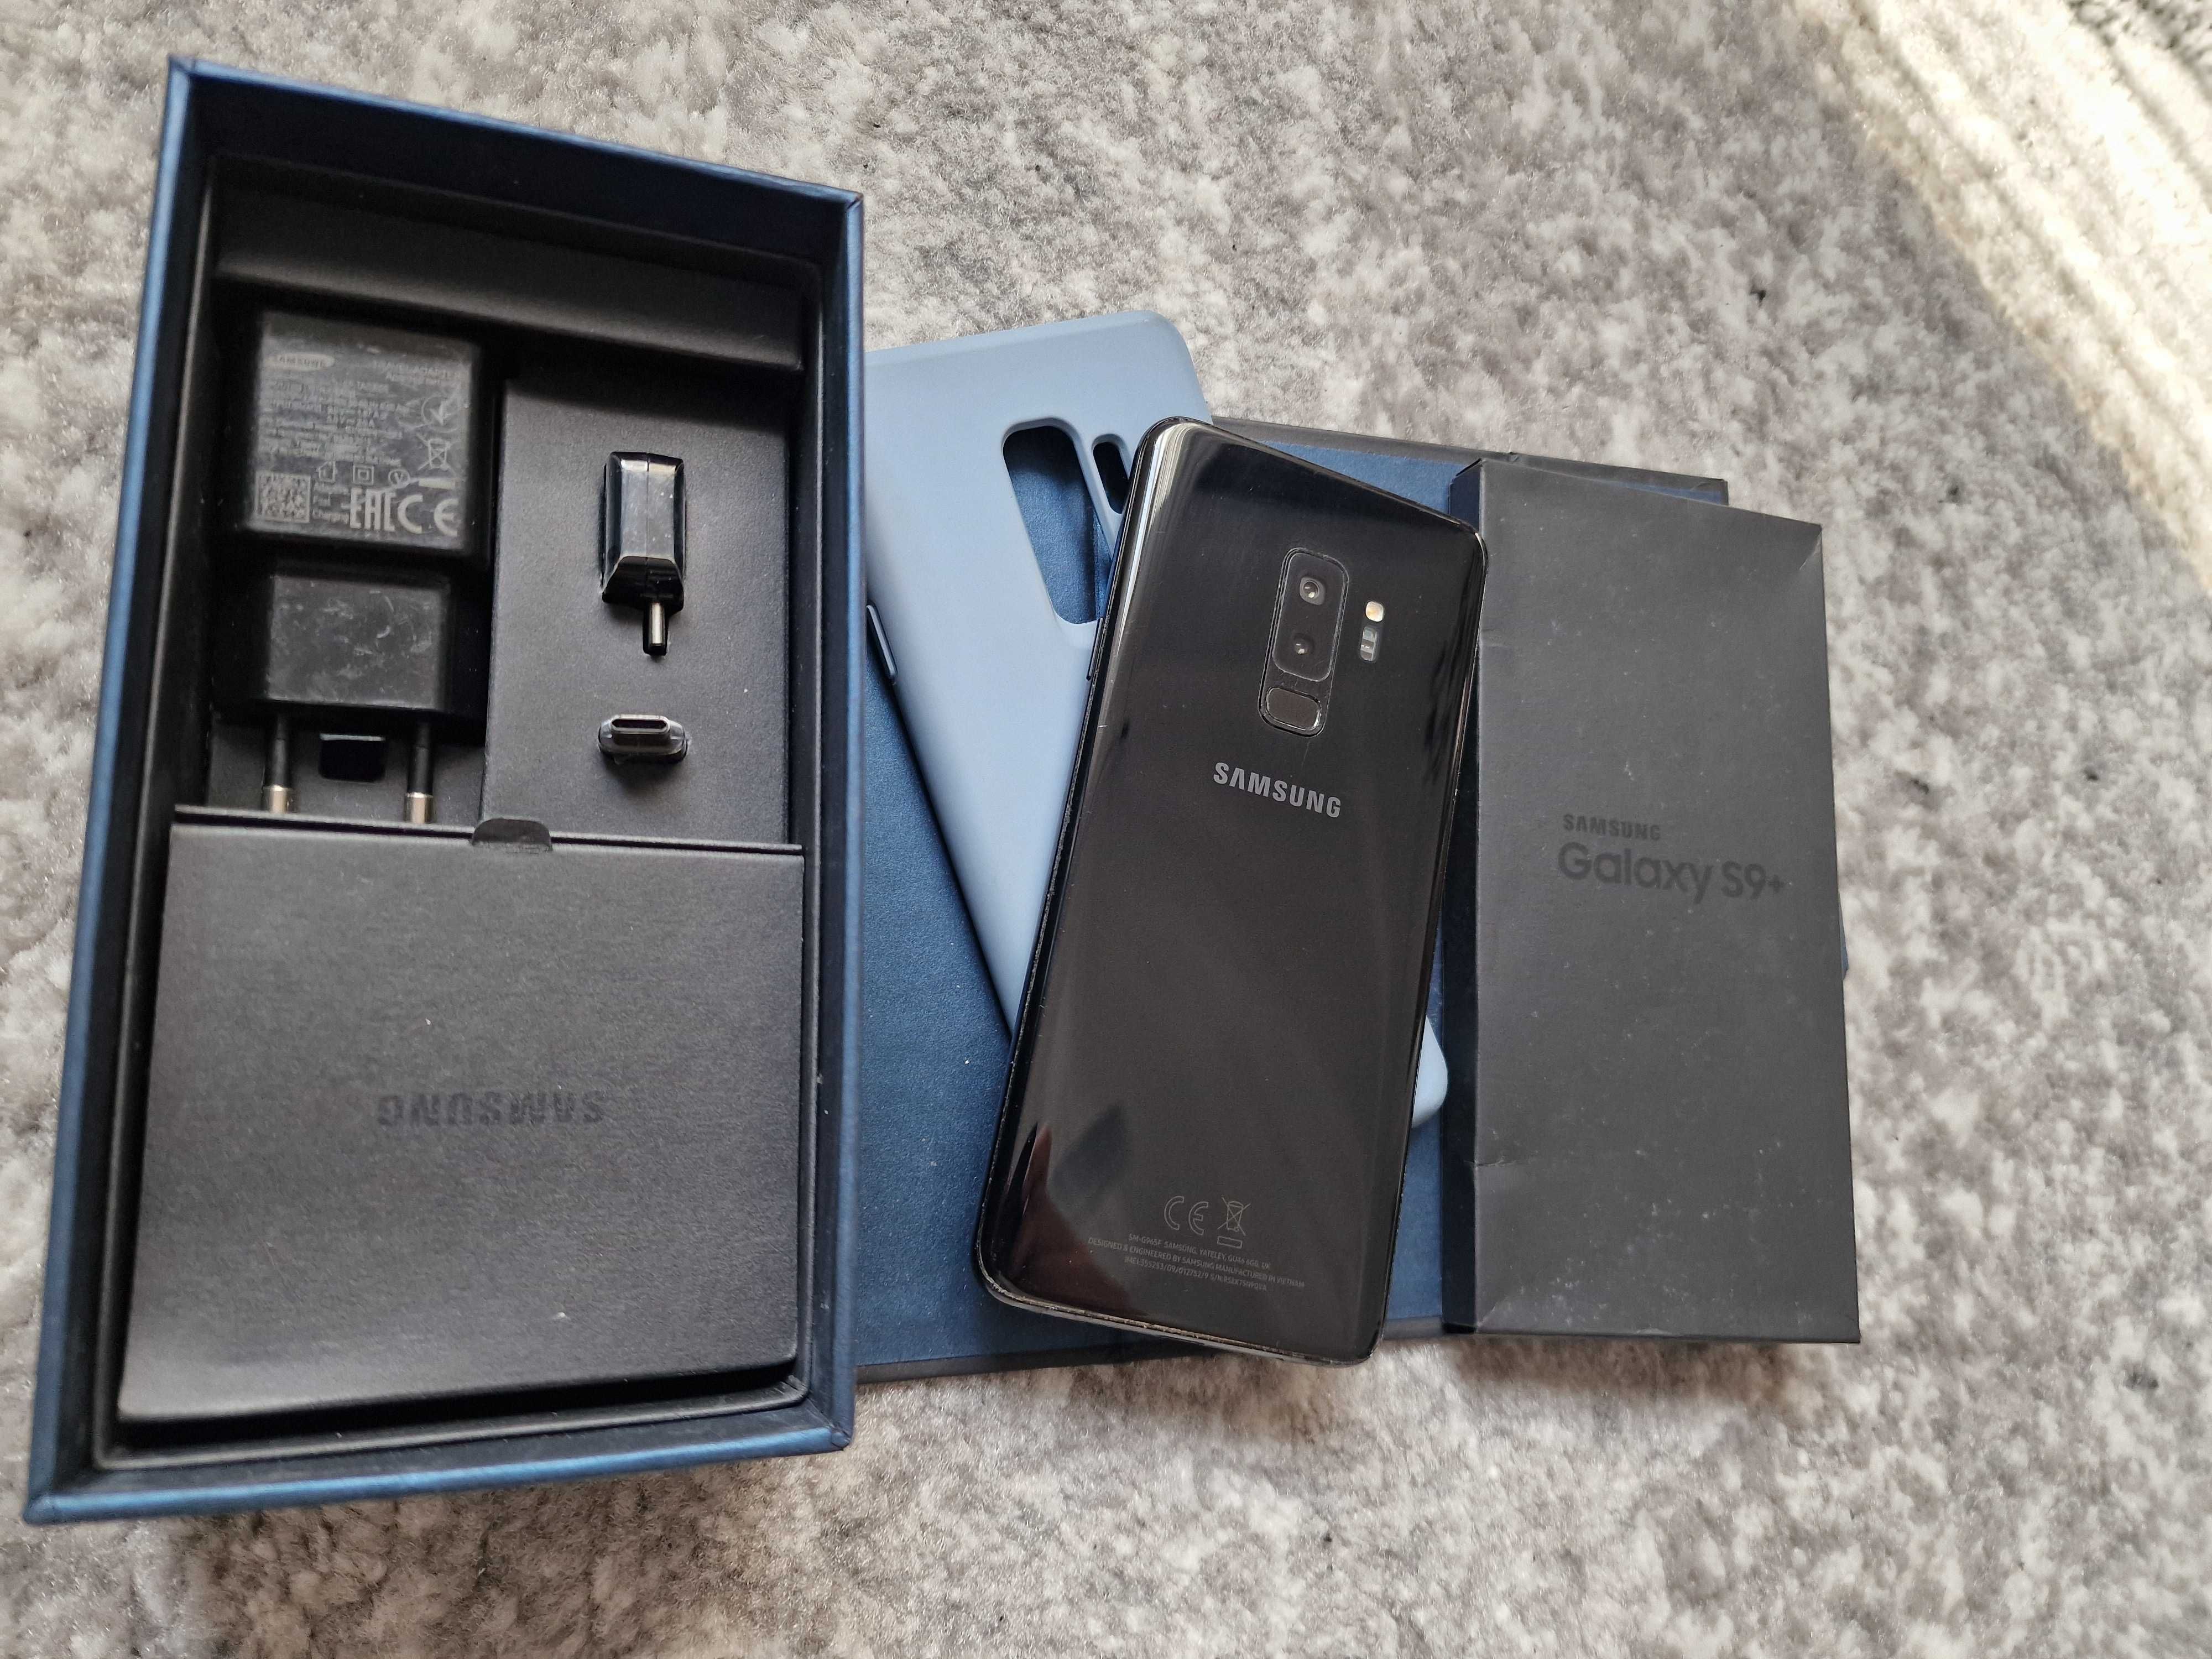 Samsung S9 Plus full box